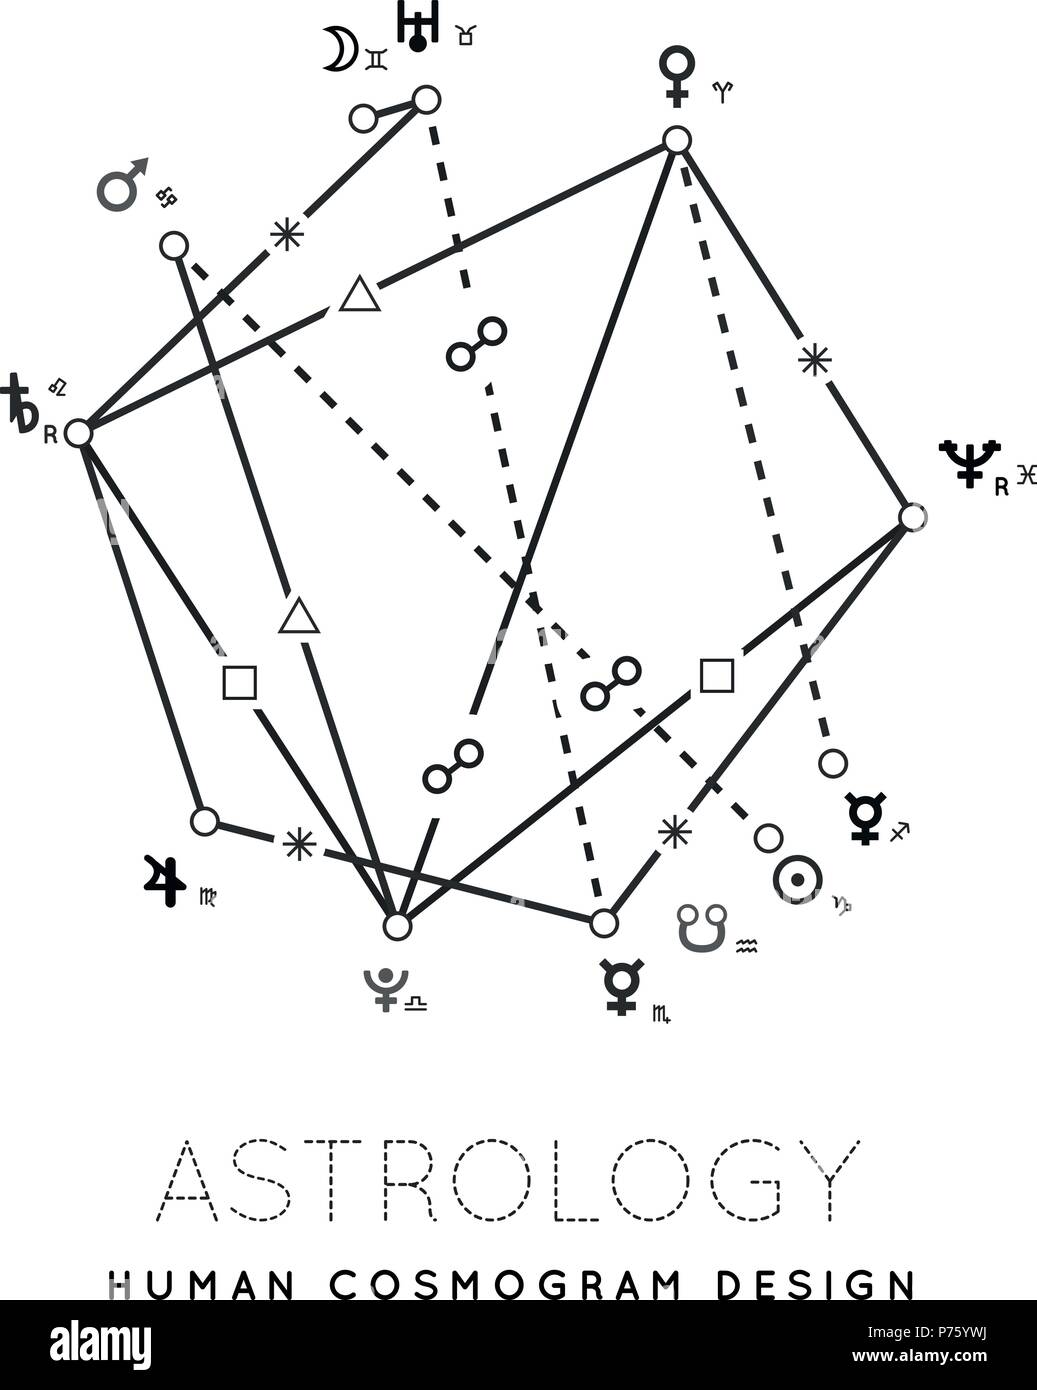 Astrology cosmogram vector background Stock Vector